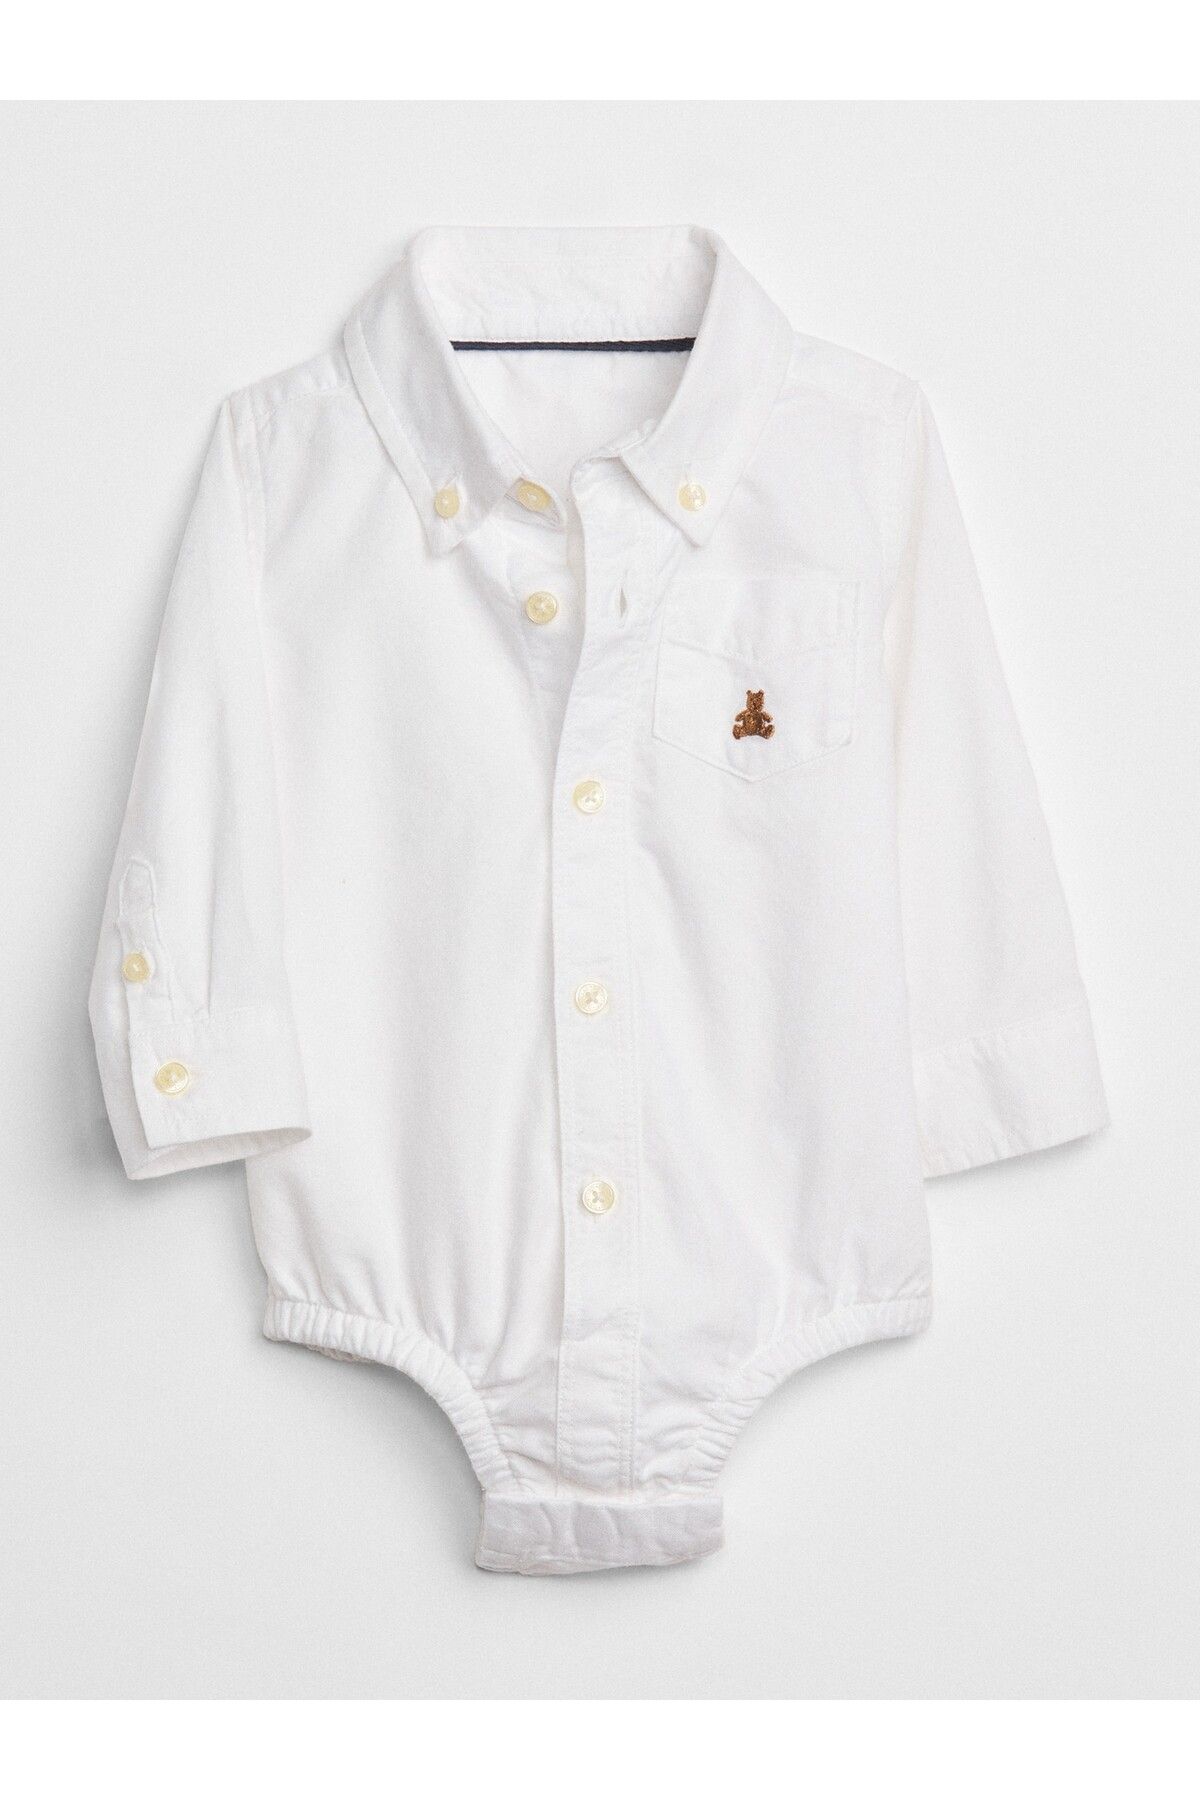 GAP Erkek Bebek Beyaz Oxford Bodysuit